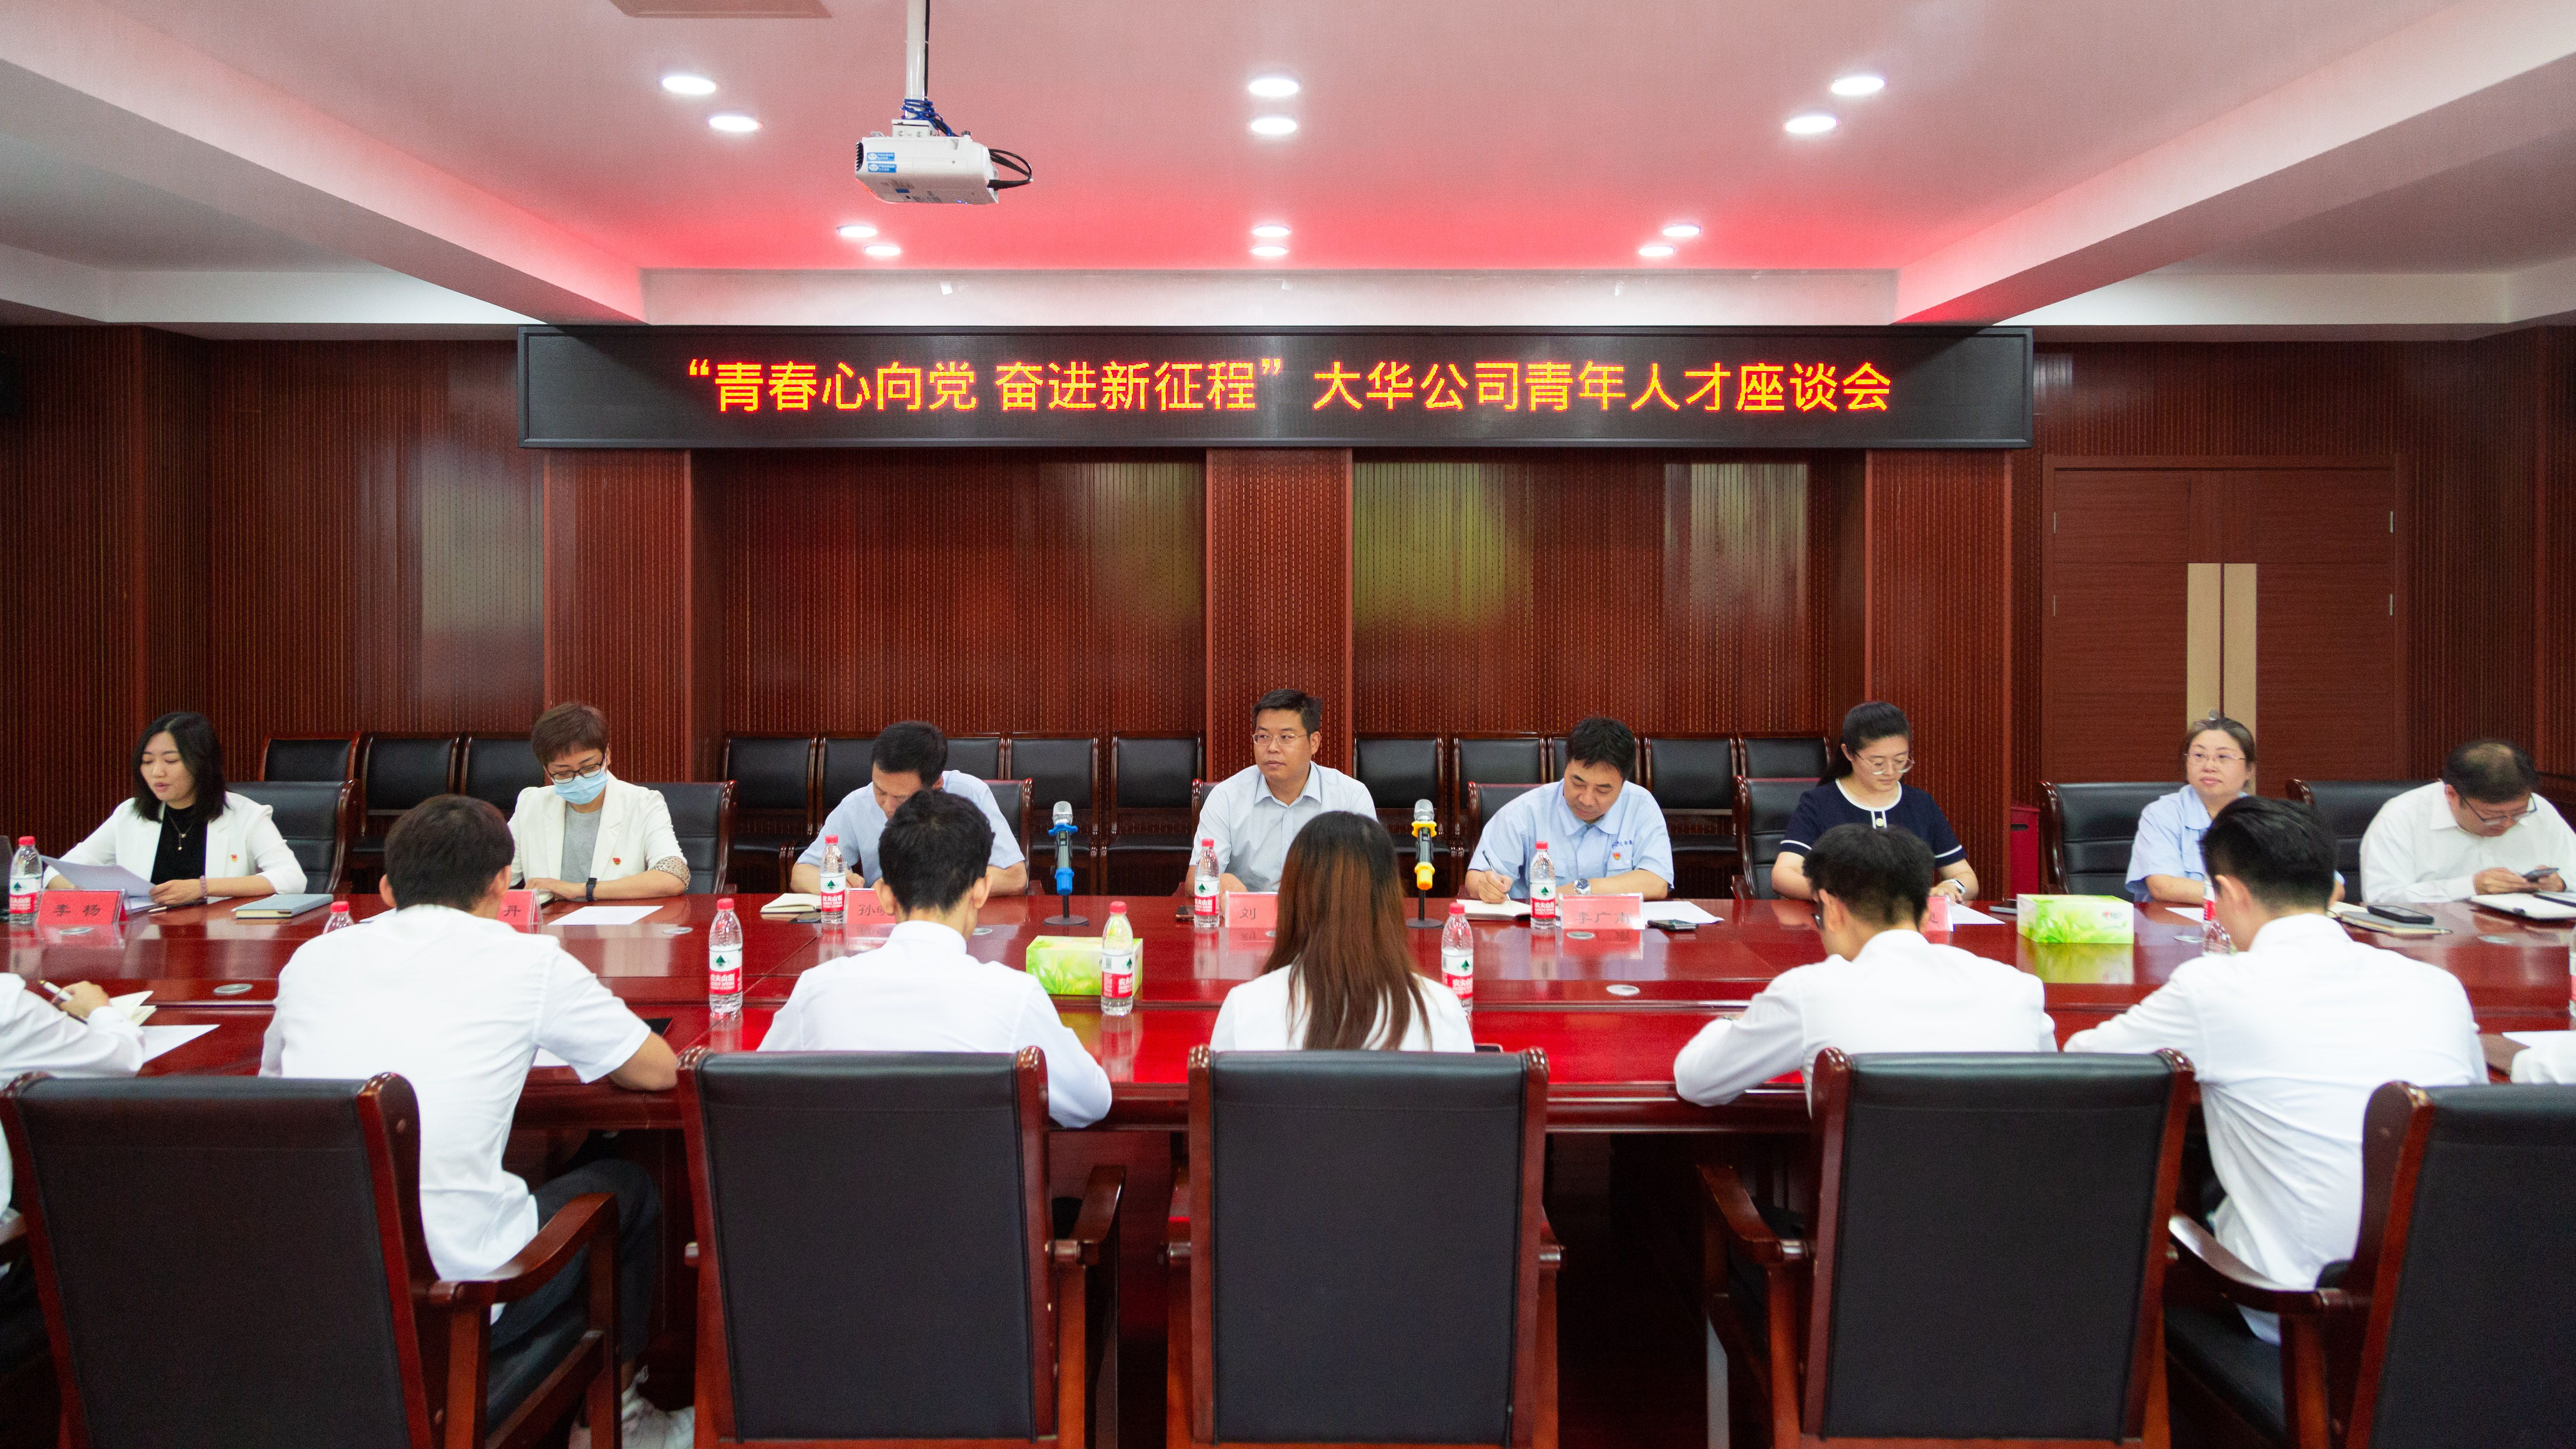 大華公司組織召開“青春心向黨 奮進新征程”青年人才座談會